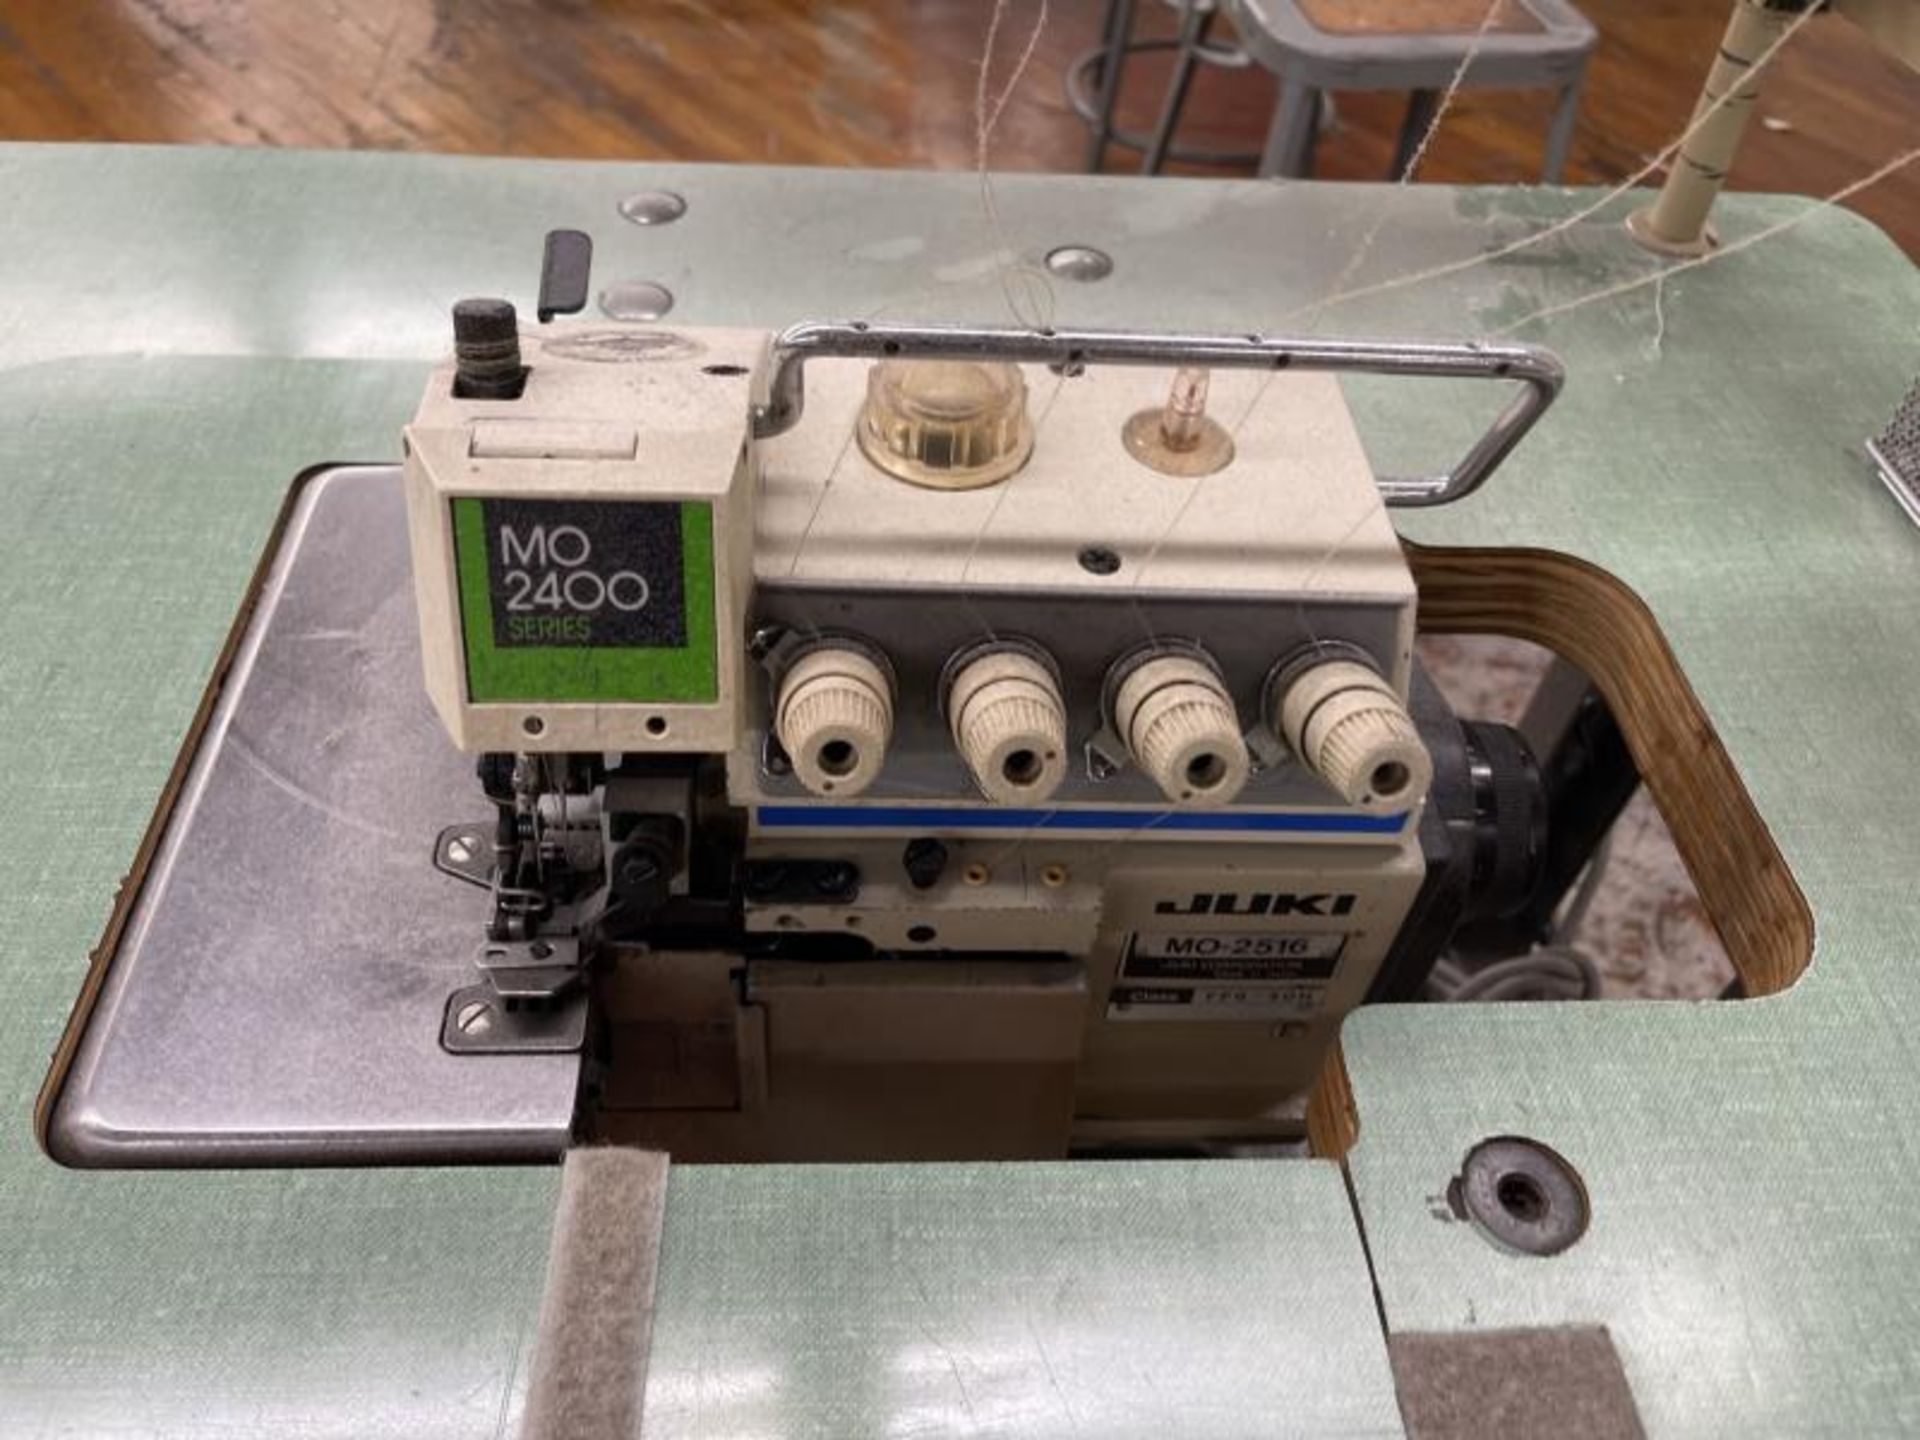 Juki Sewing Machine 2400 Series, M: 2516-MO - Image 2 of 6